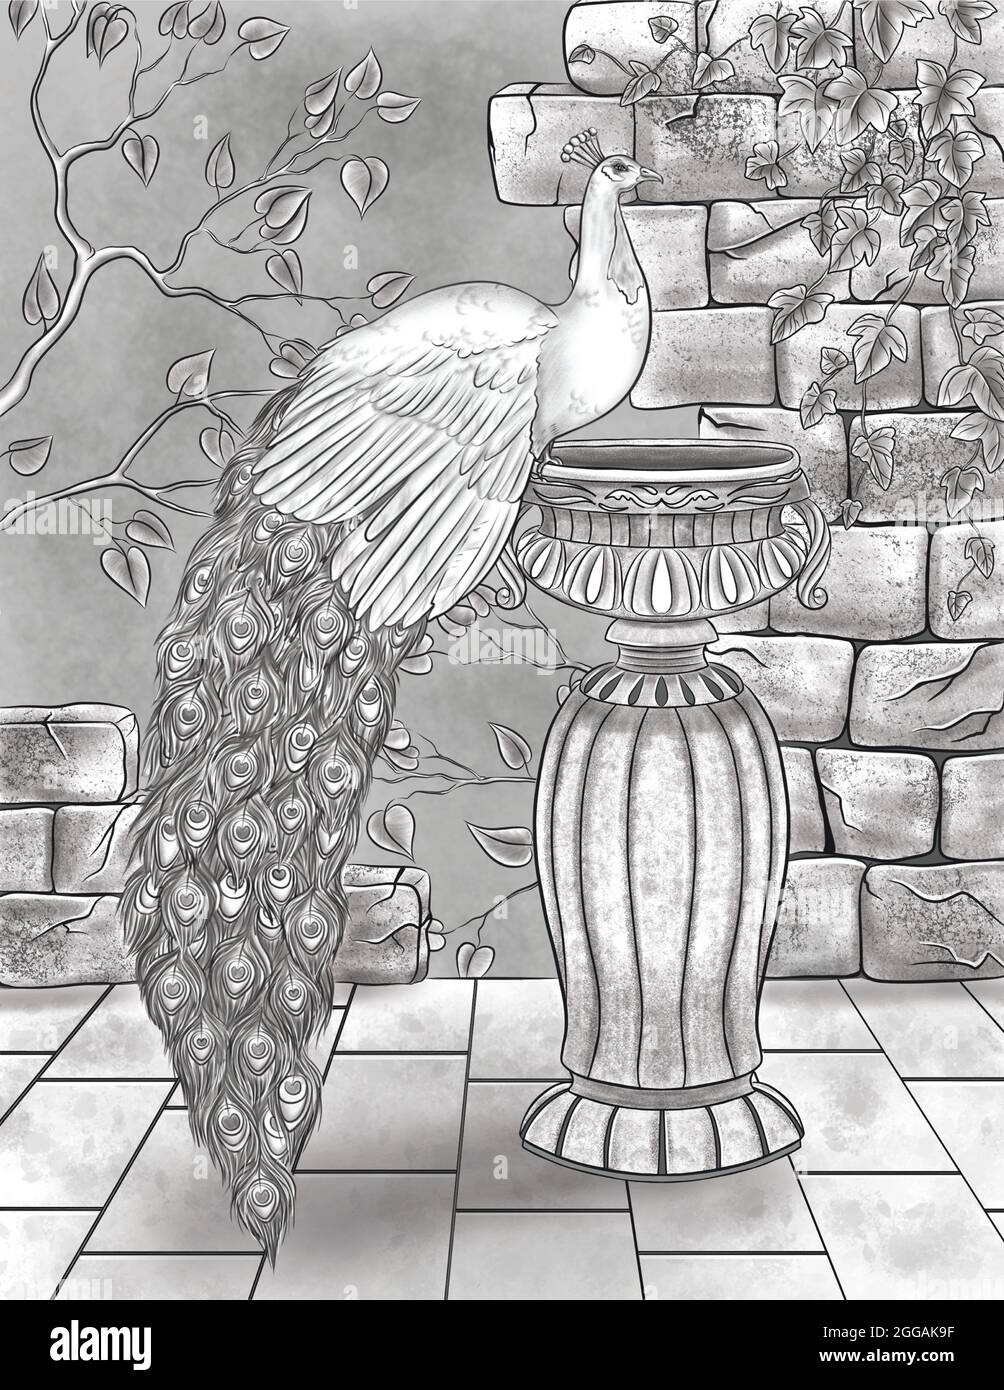 Schöner Pfau, der auf EINEM Wasserbecken mit gebrochenen Wänden und farblosem Liniendiagramm der Reben ruht. Hübsches Peafowl auf EINER Vase Malbuch Seite stehen. Stockfoto